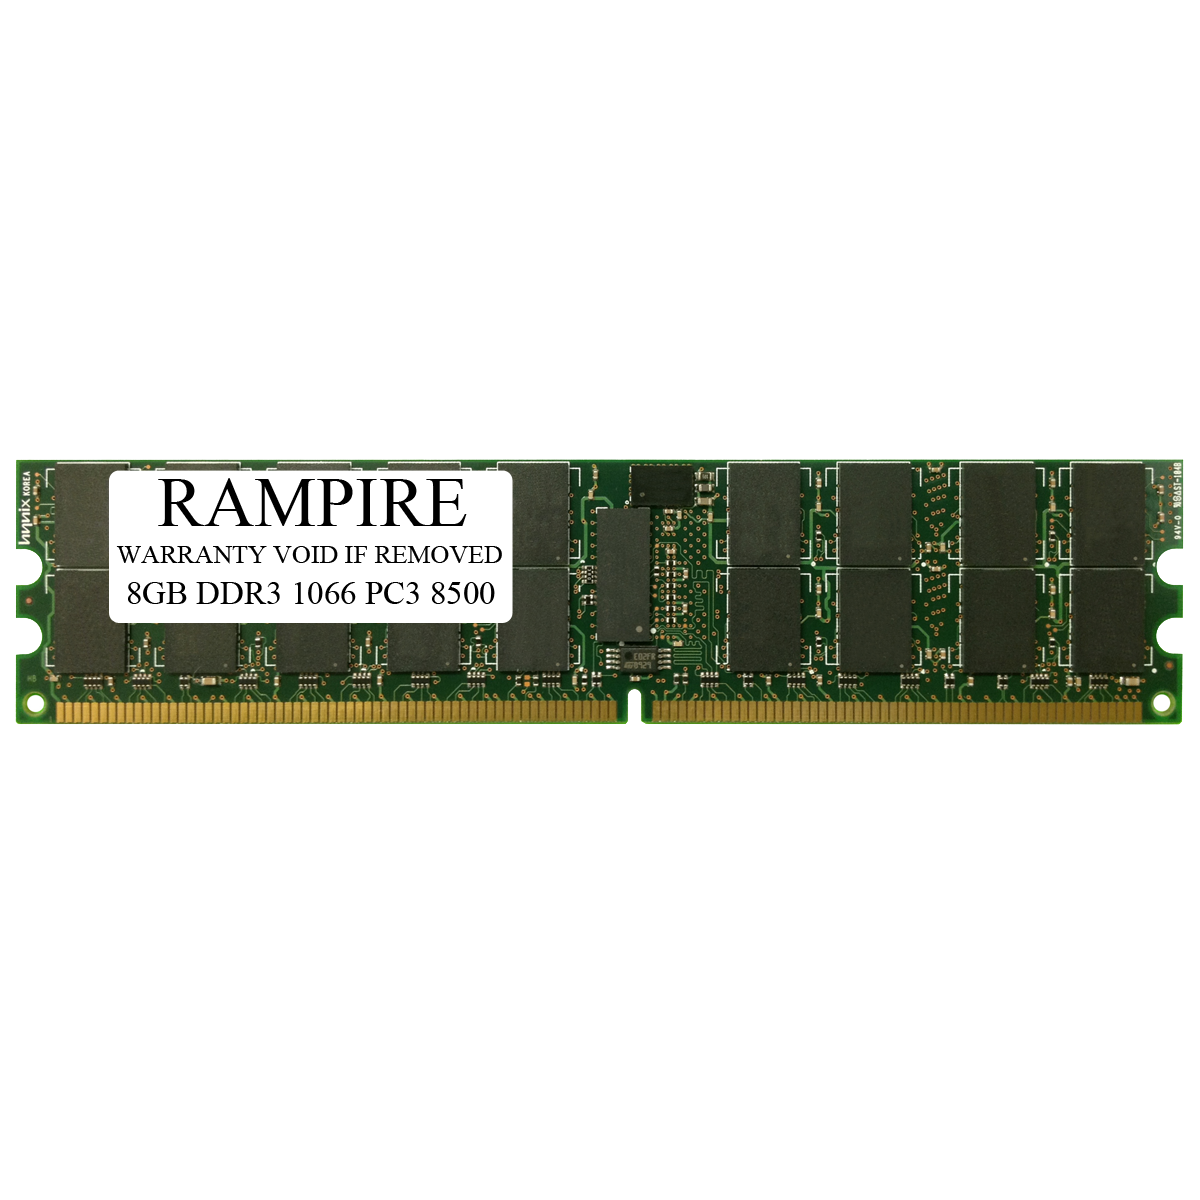 RAMPIRE 8GB DDR3 1066 (PC3 8500) 240-Pin SDRAM 4Rx8 Standard 